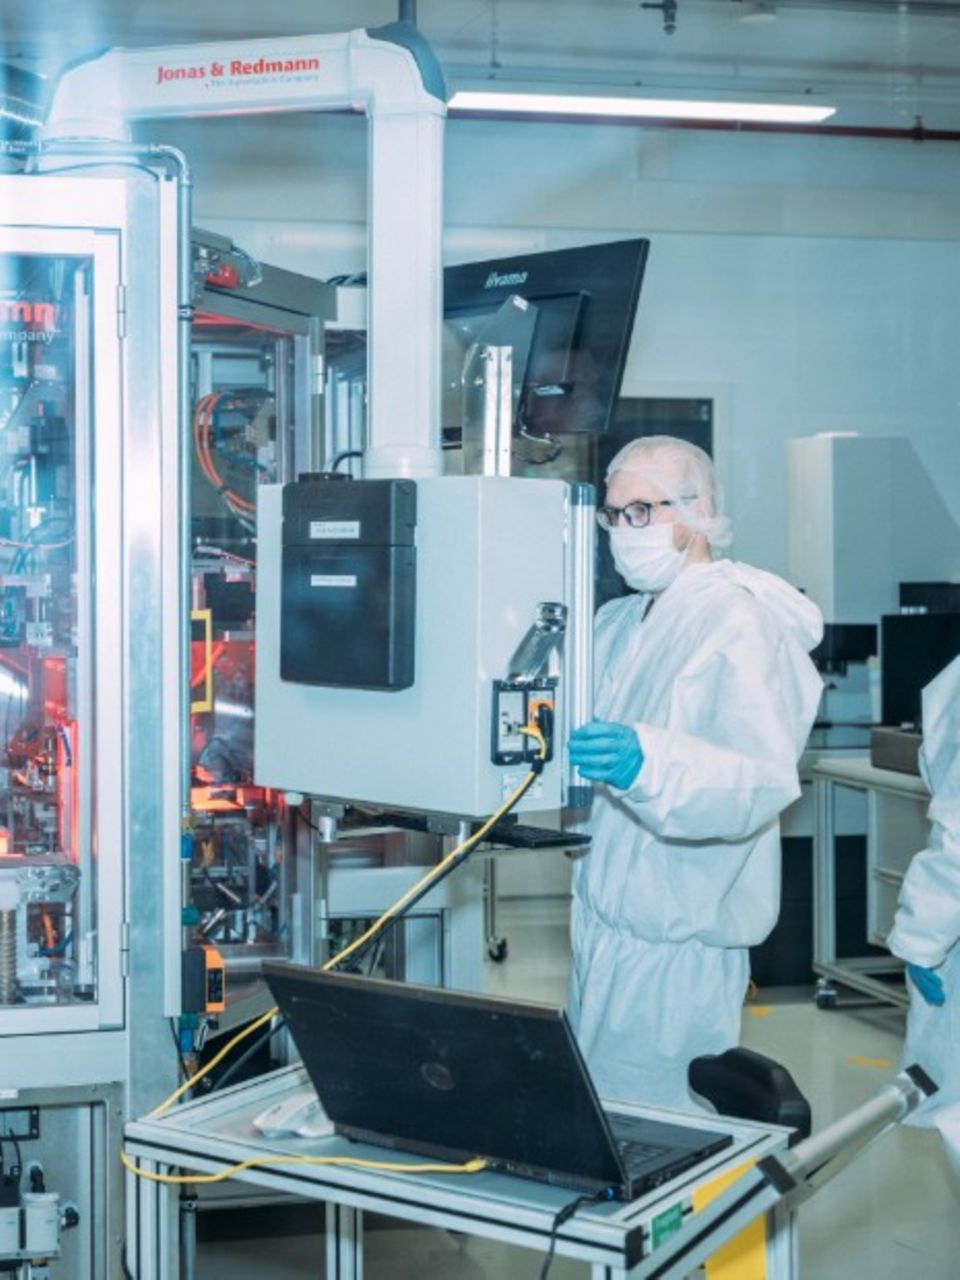 Im Reinraum testet ein Mitarbeiter Lithium-Ionen-Zellen unter klinischen Bedingungen